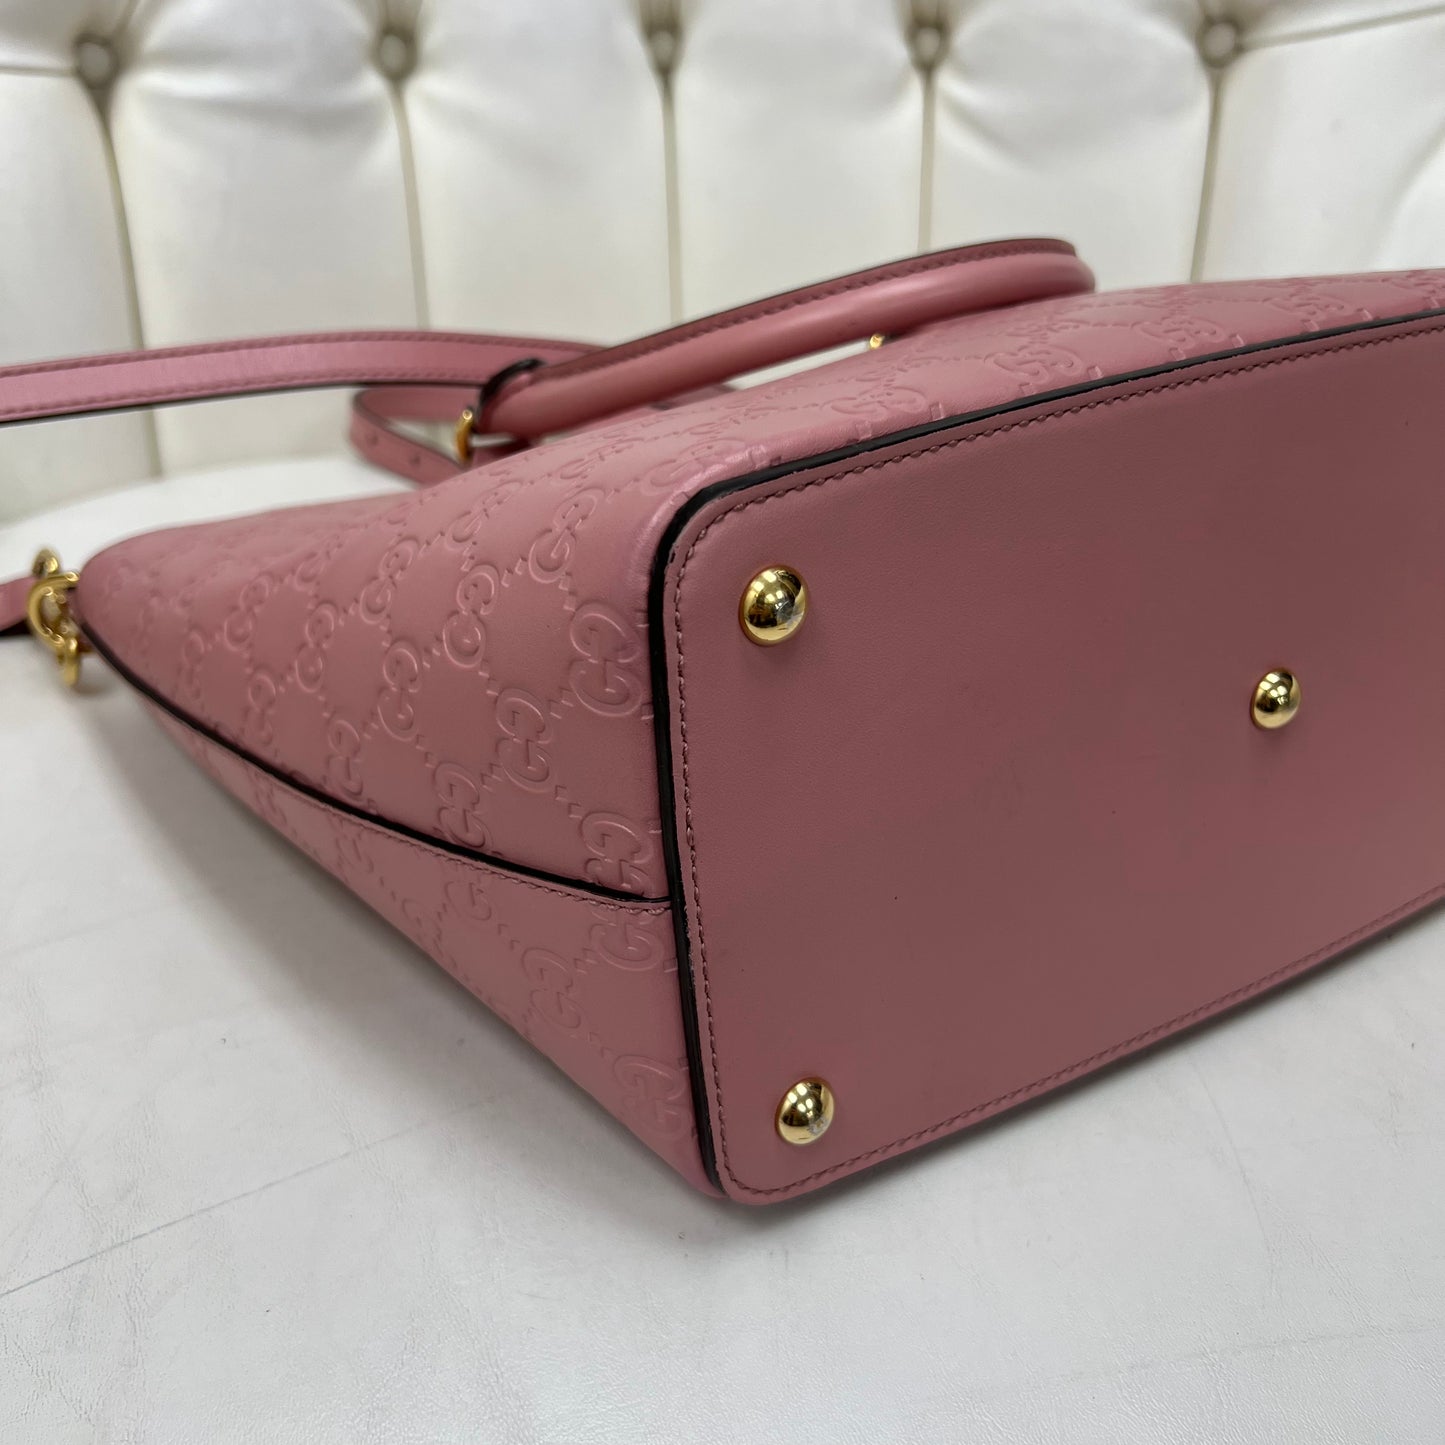 Gucci 2 Way Shoulder Bag Pink Leather